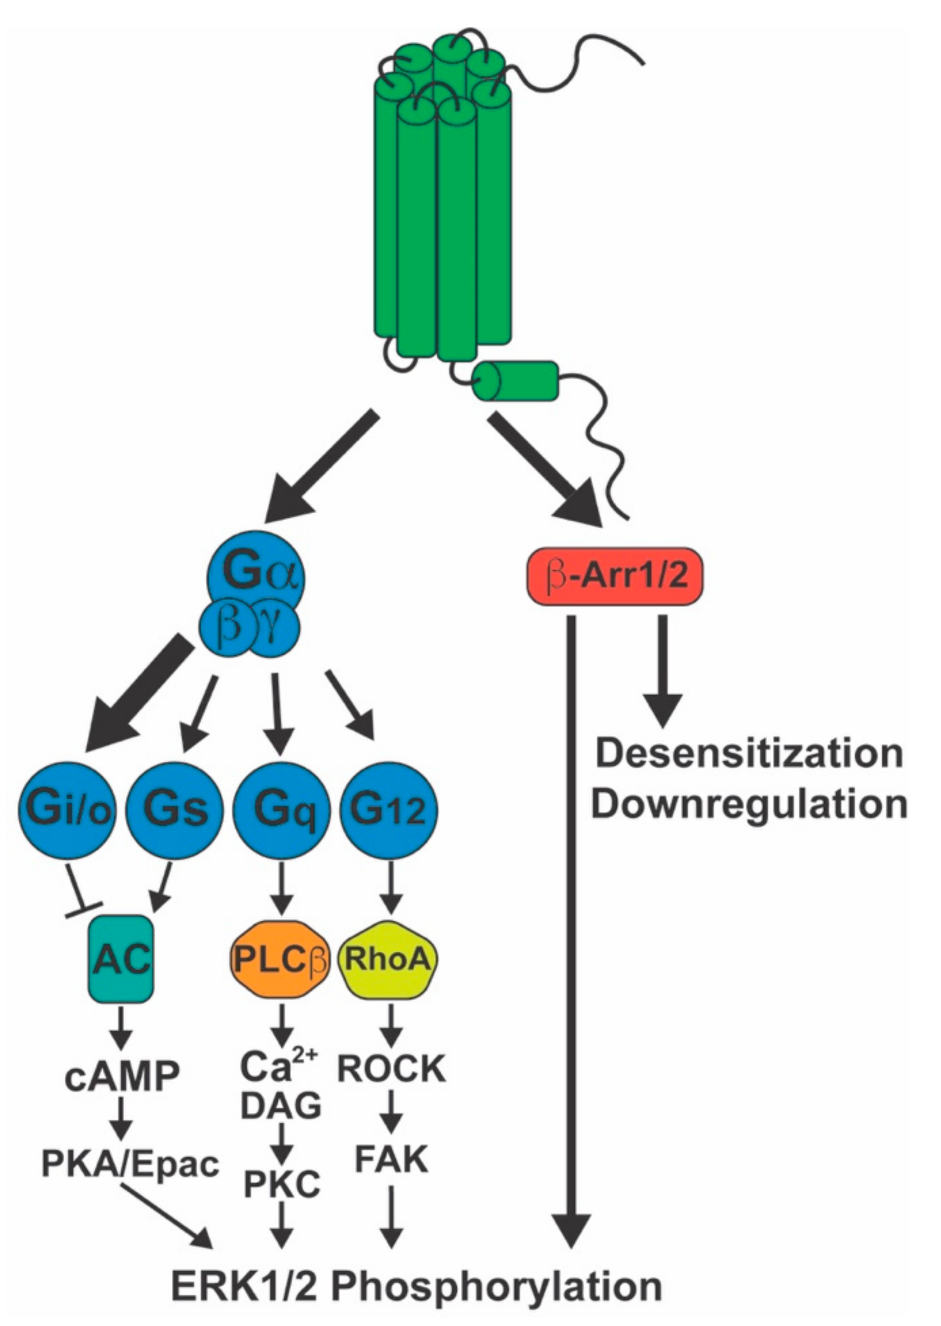 cb1 receptor